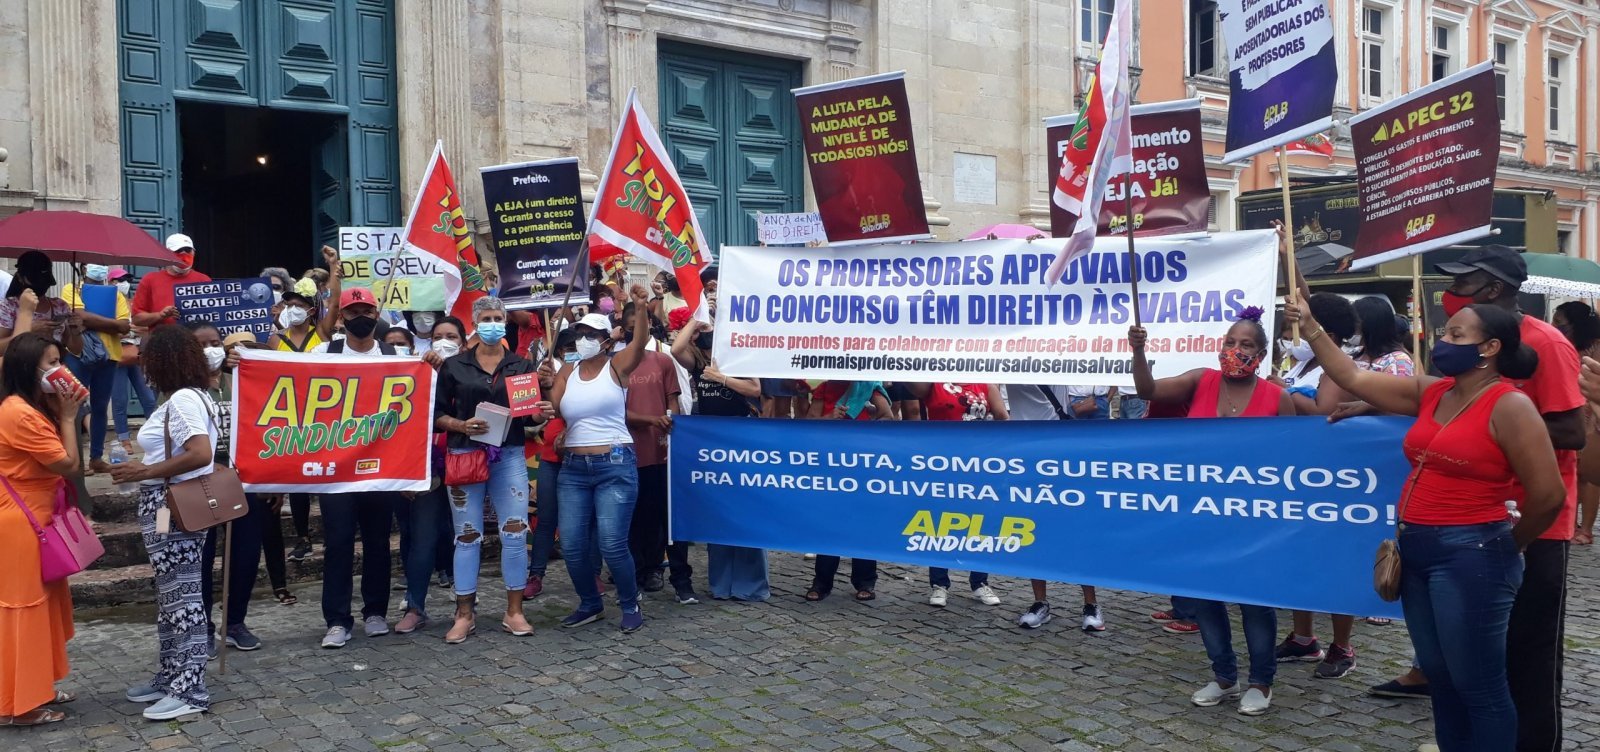 Após anúncio de greve, Prefeitura de Salvador ameaça descontar salário de professores